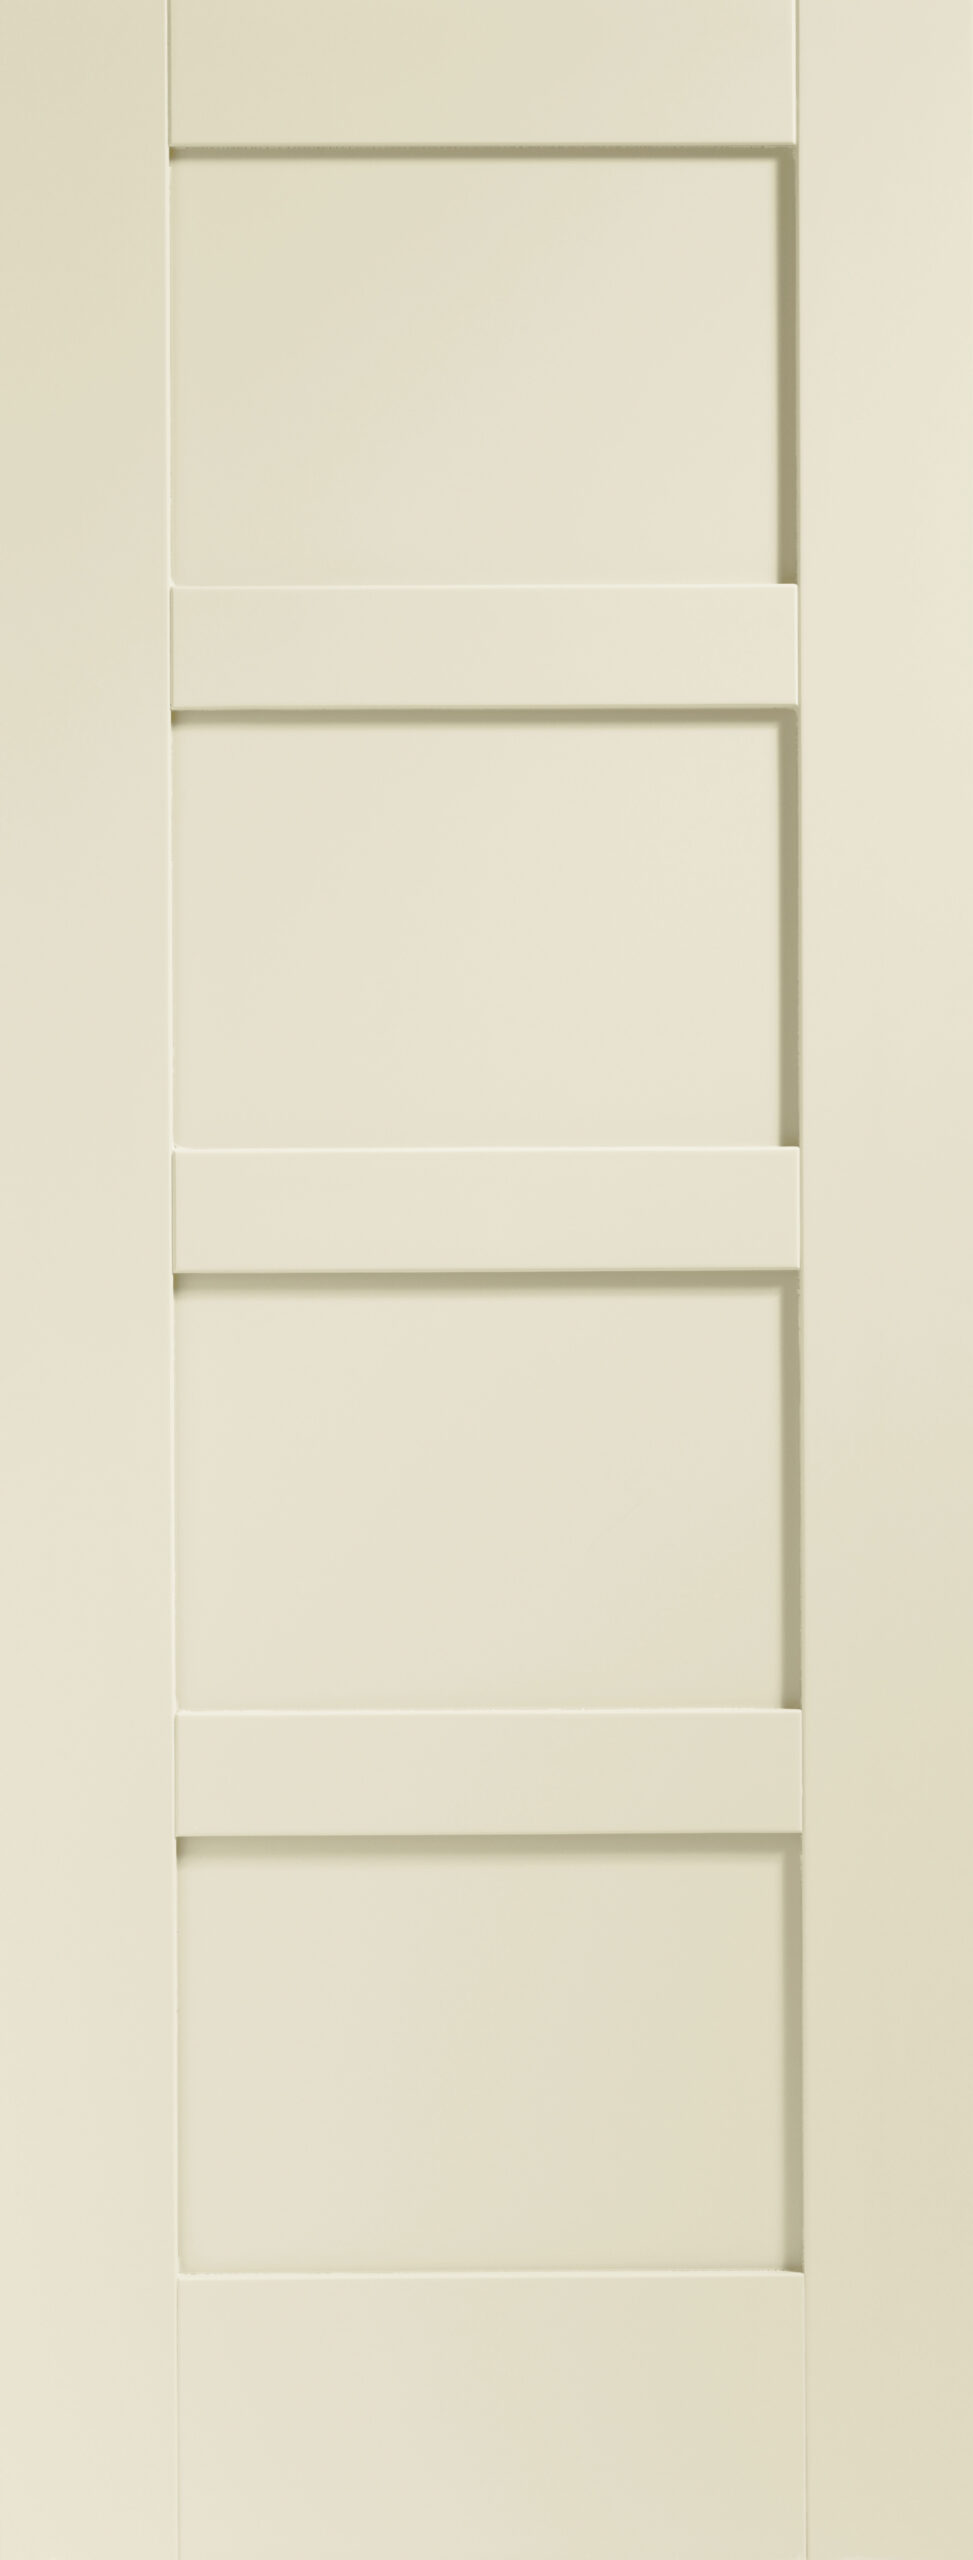 Shaker 4 Panel Internal White Primed Fire Door – Chantilly, 1981 x 686 x 44 mm